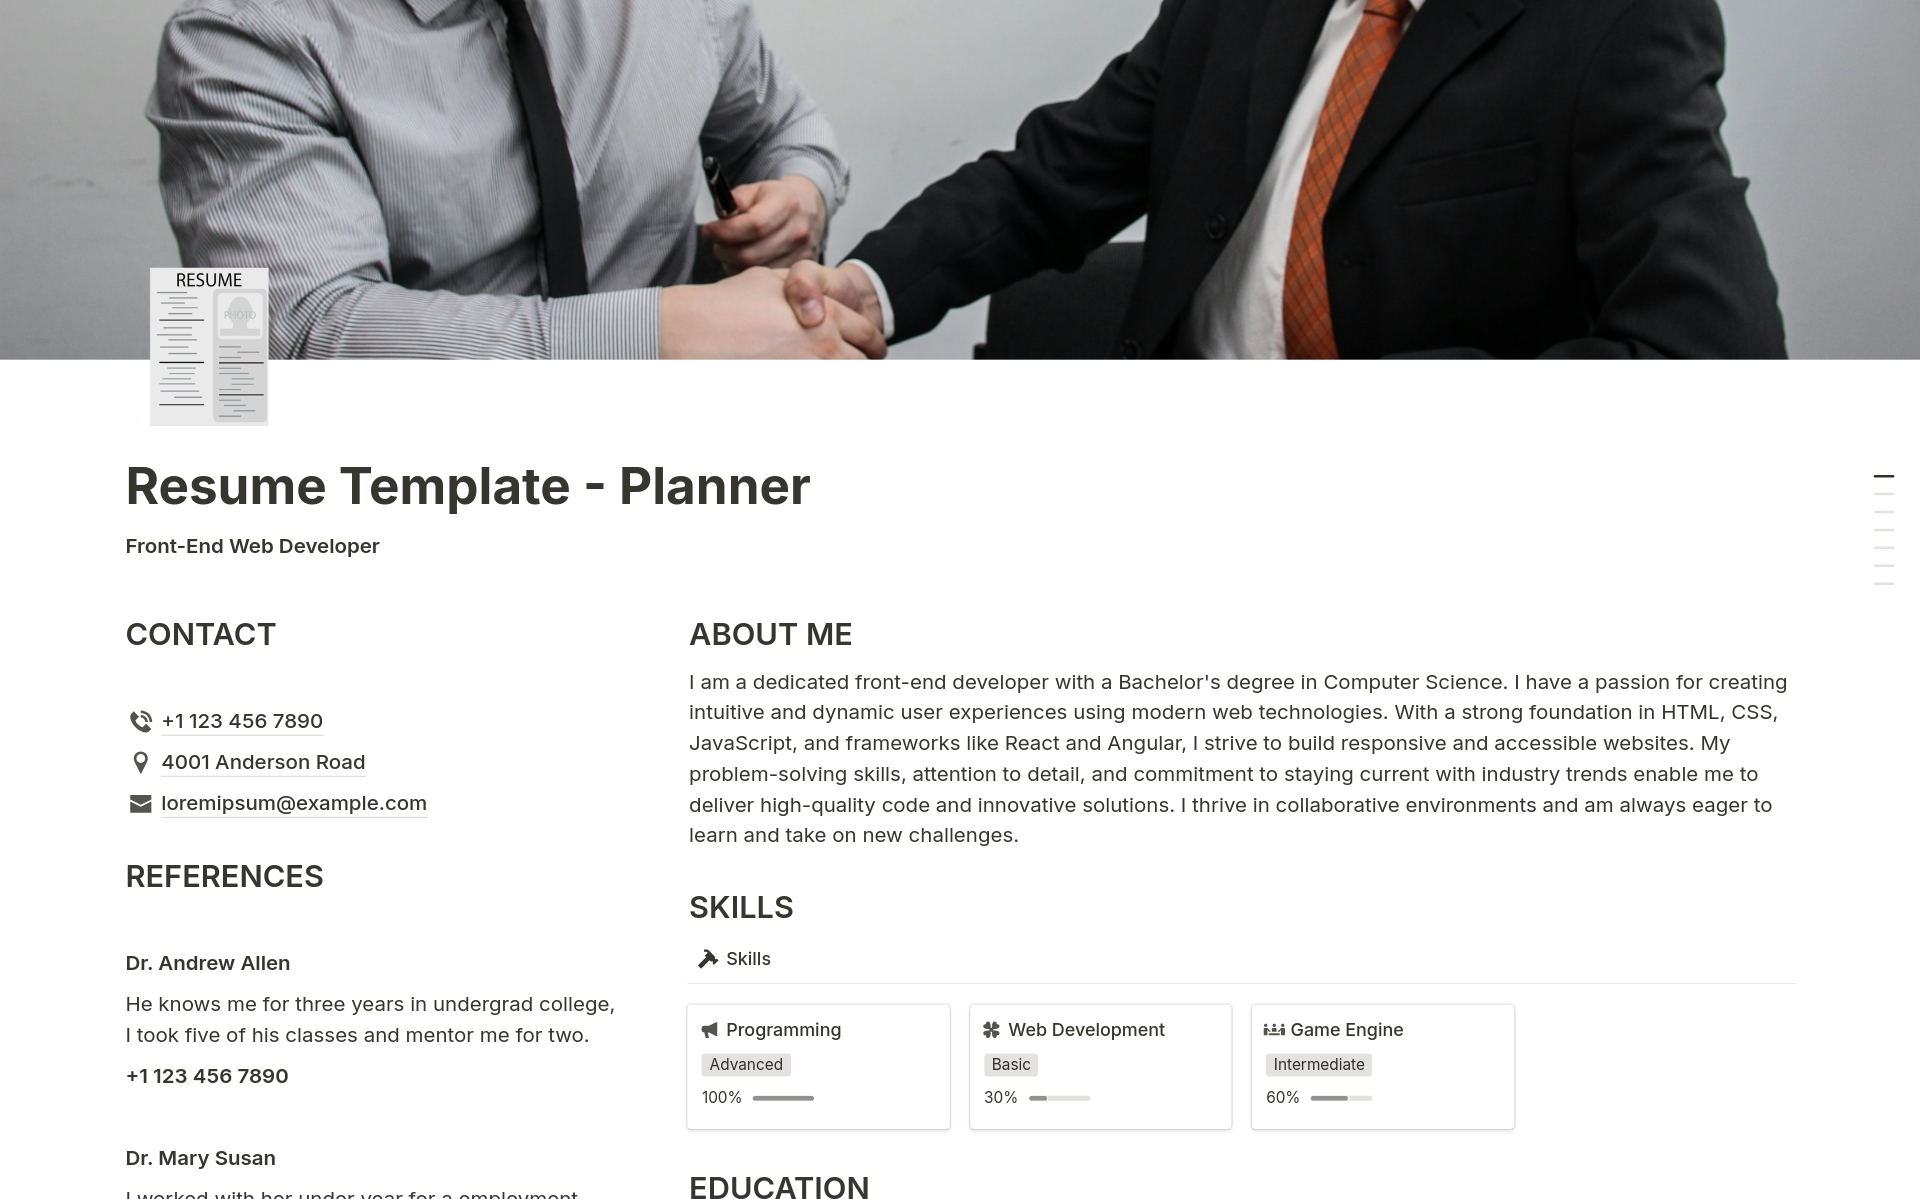 Vista previa de una plantilla para Resume - Planner